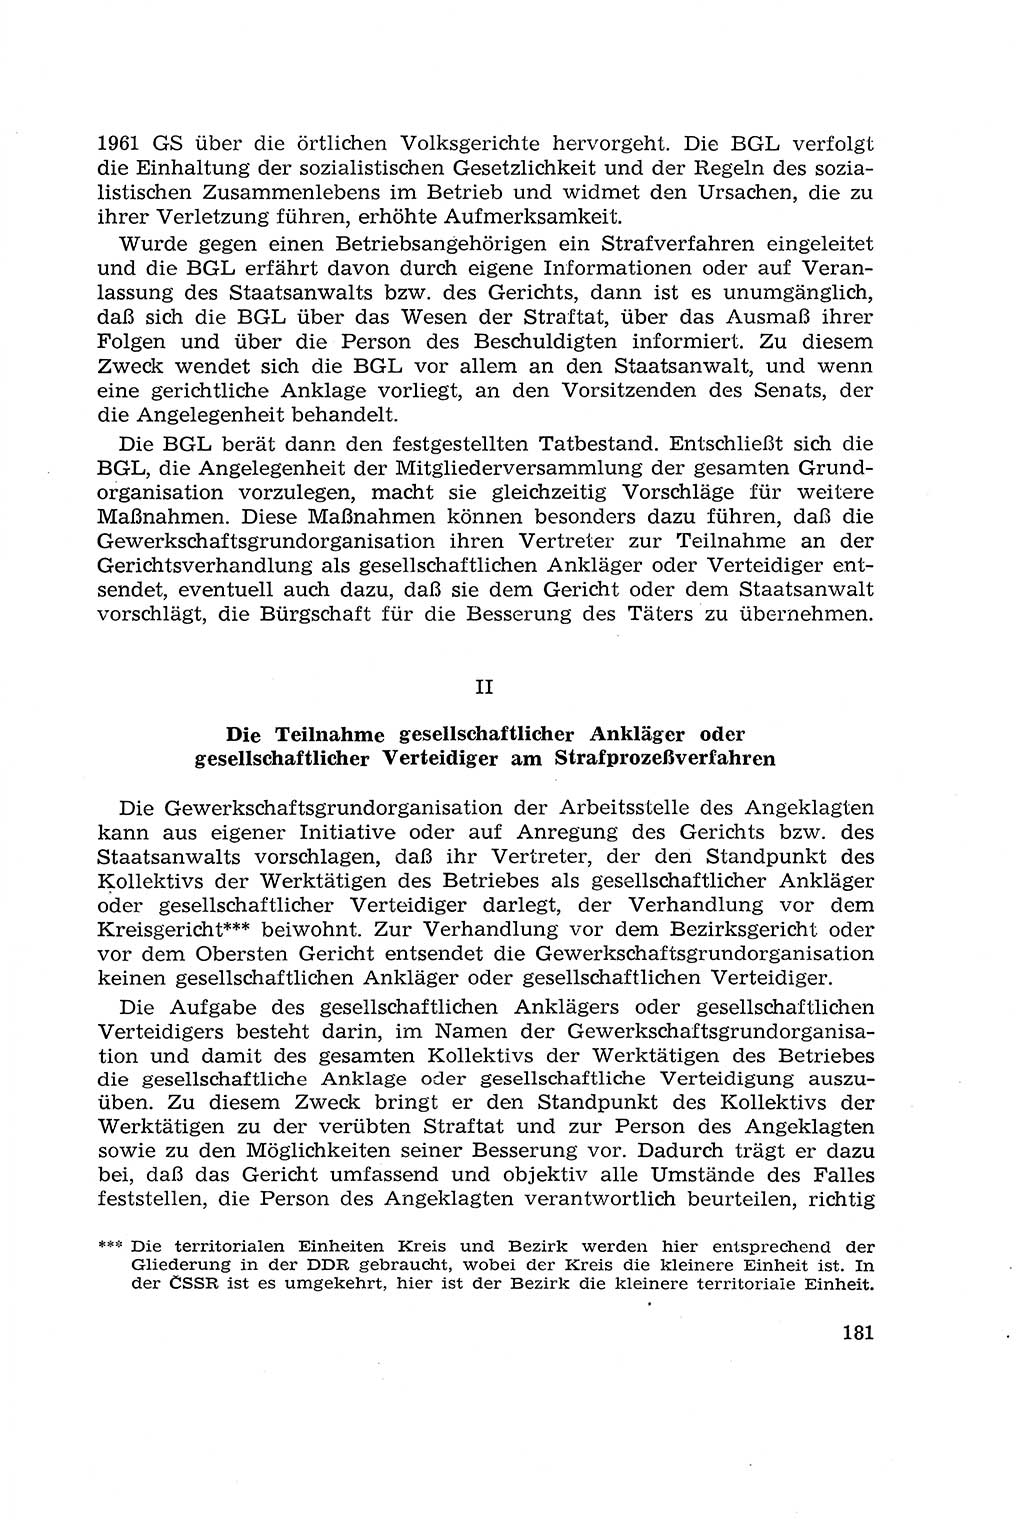 Die Mitwirkung der Werktätigen am Strafverfahren [Deutsche Demokratische Republik (DDR)] 1966, Seite 181 (Mitw. Str.-Verf. DDR 1966, S. 181)